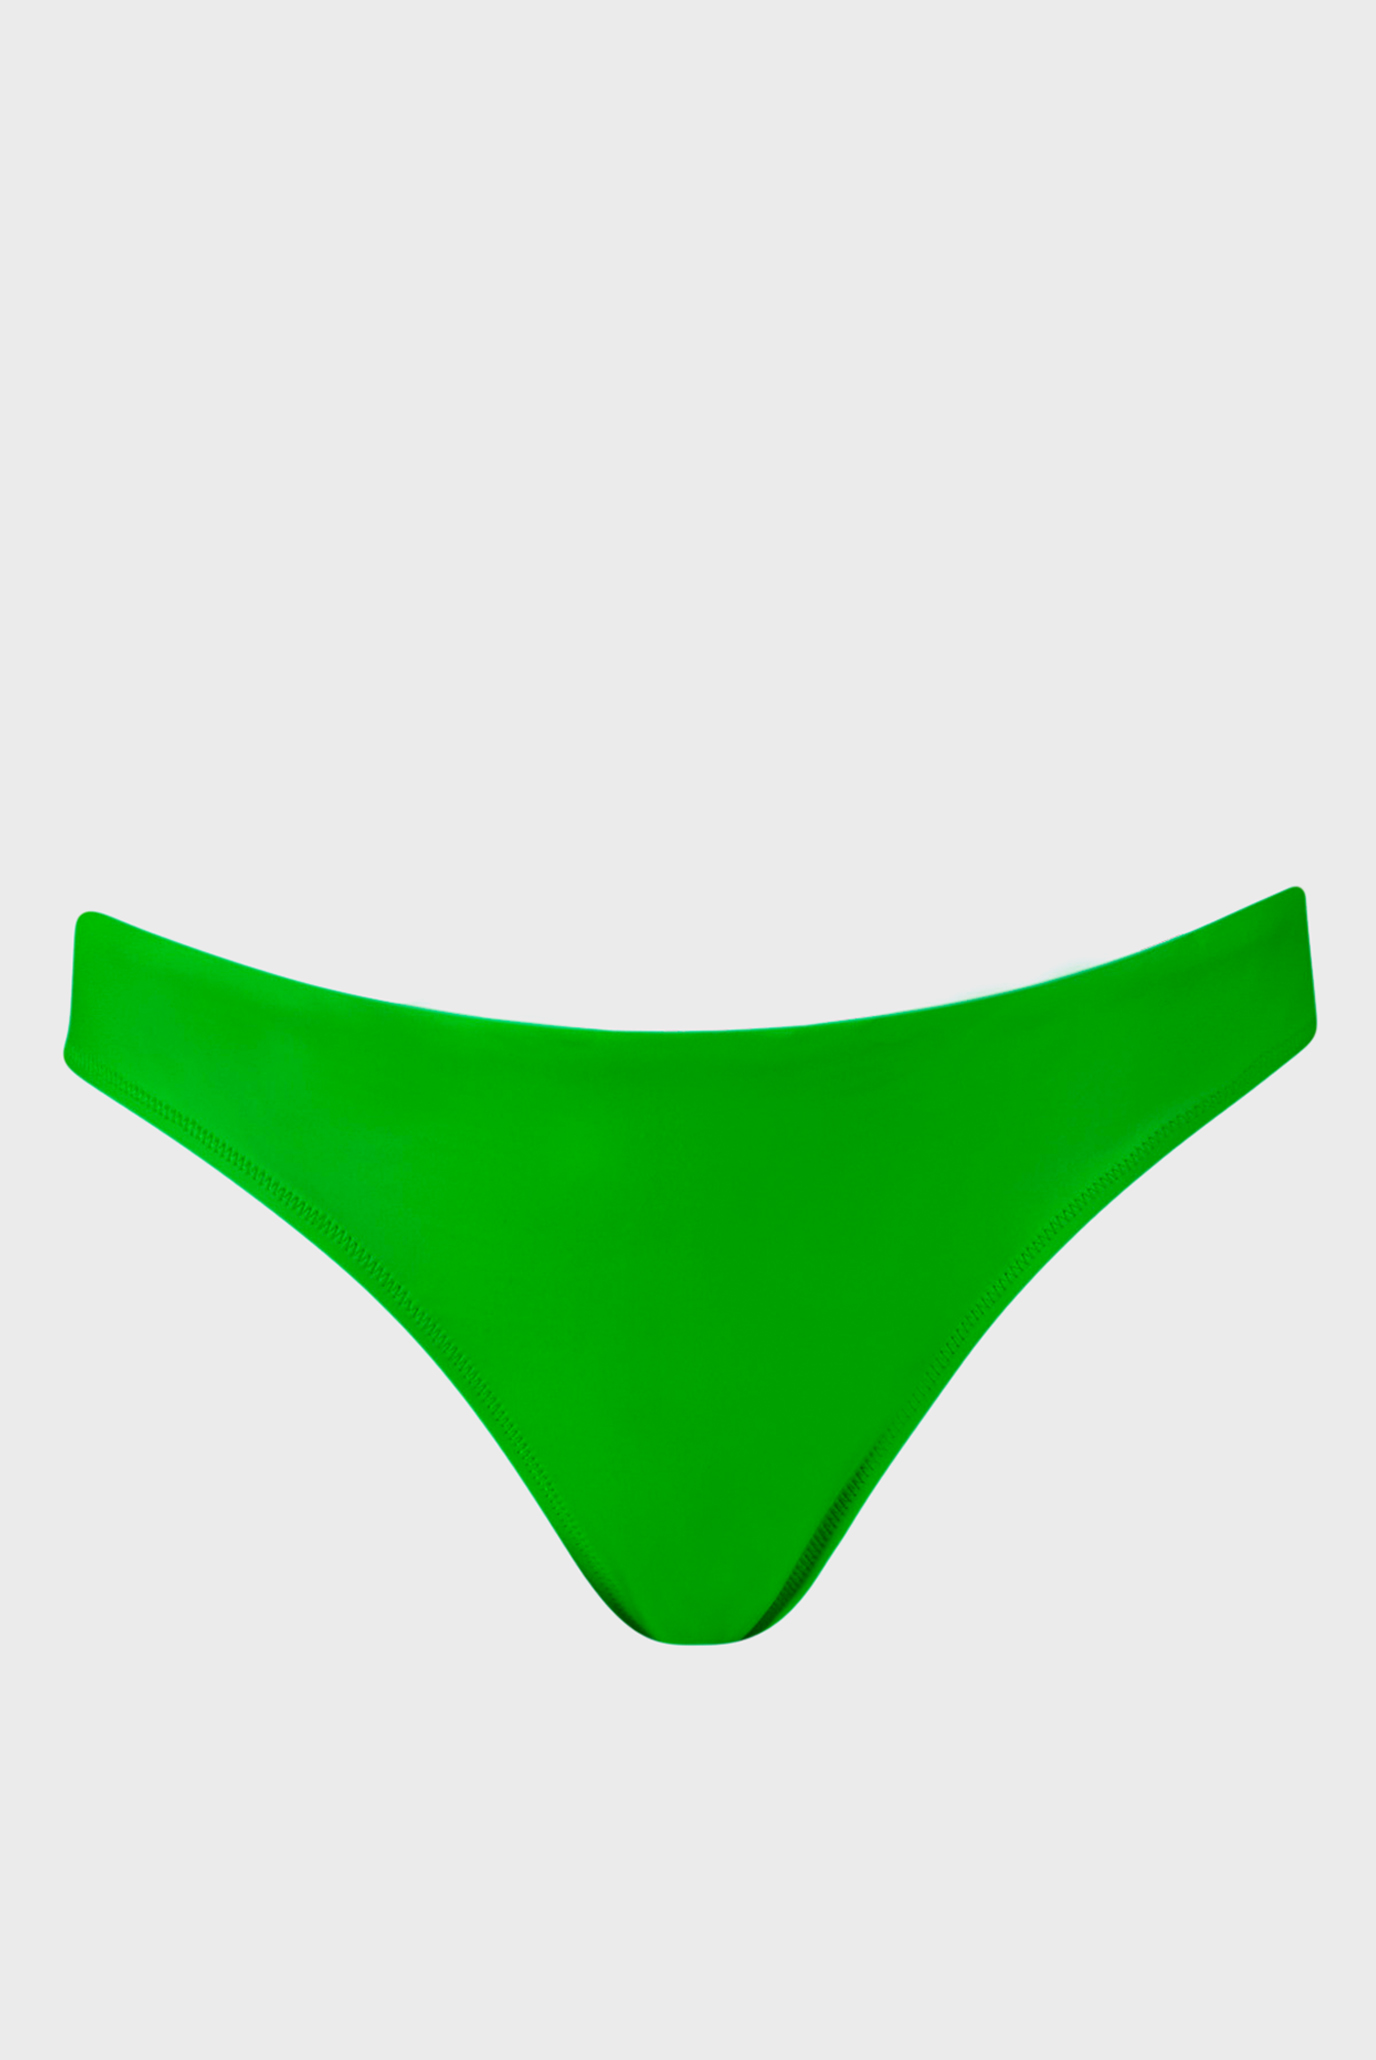 Женские зеленые трусики от купальника PUMA Women's Brazilian Swim Bottoms 1